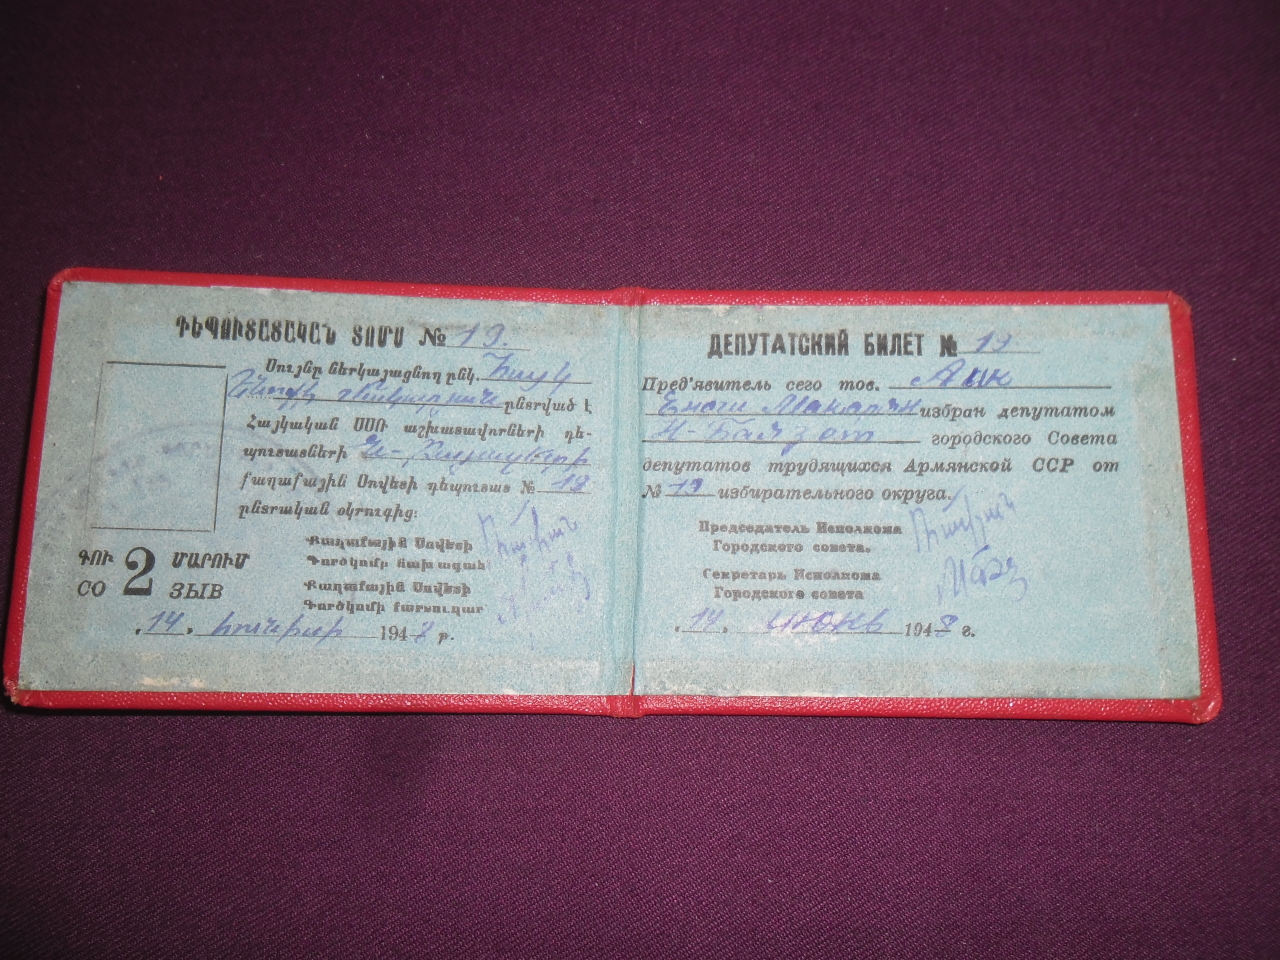 Դեպուտատական տոմս՝ Հայկ Ենոքի Մակարյանի (Վաստակավոր մանկավարժ)